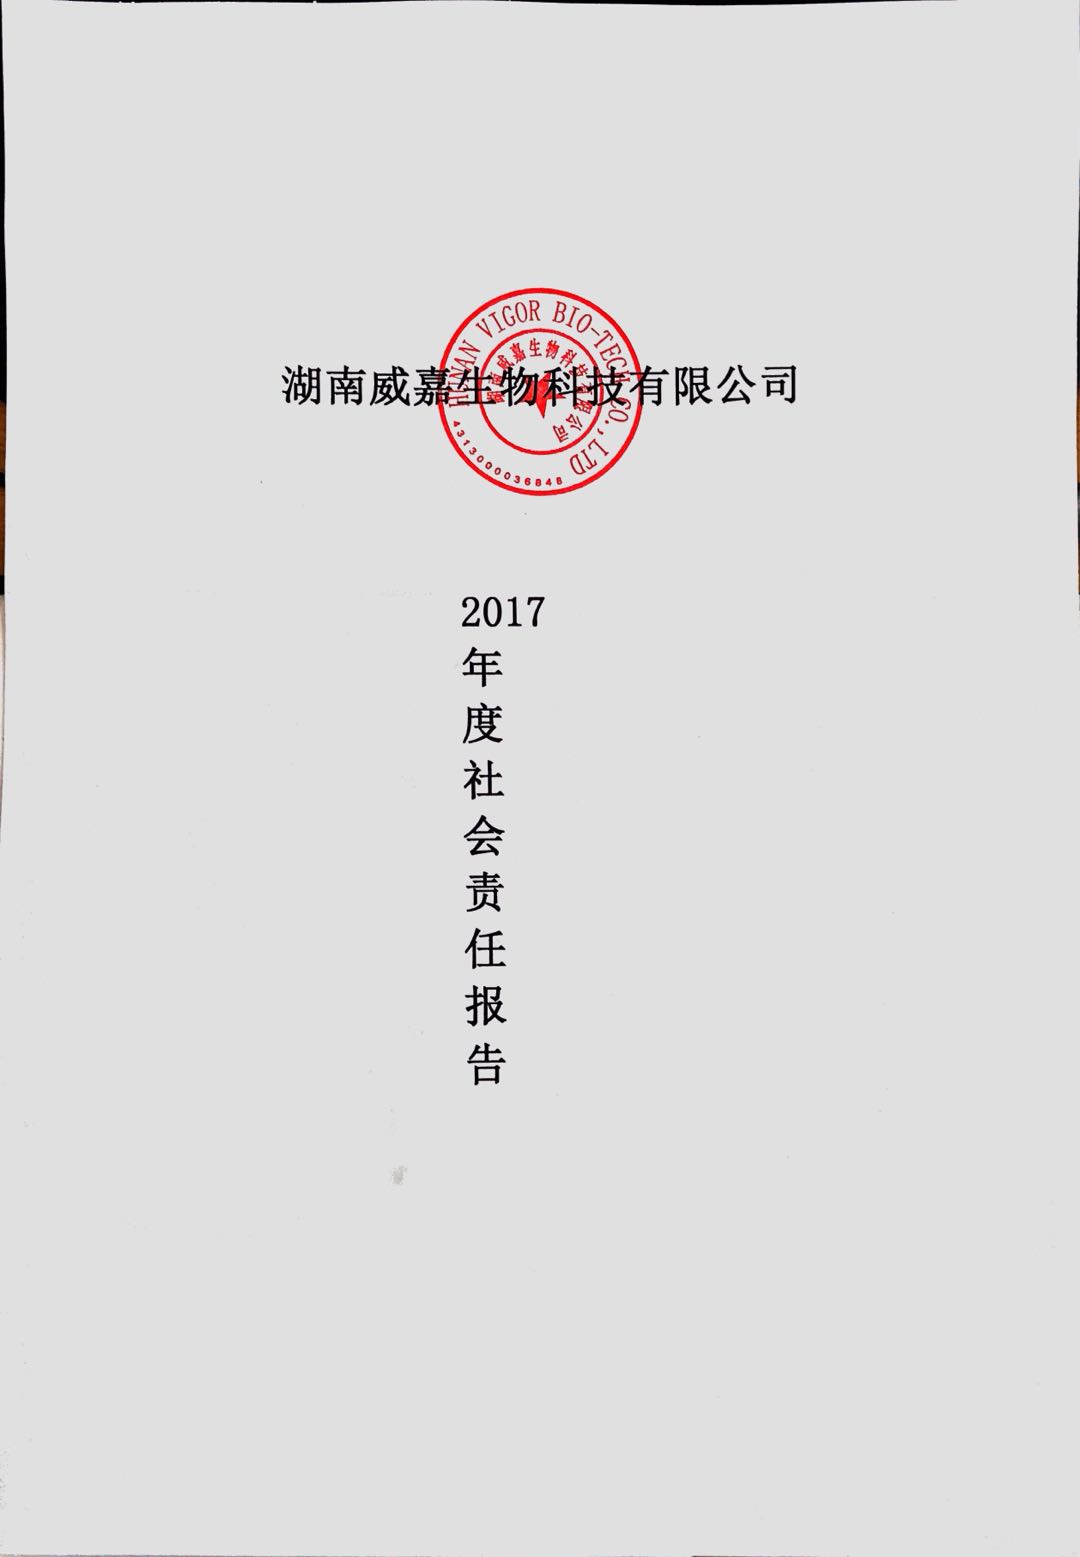 湖南威嘉发布2017年度社会责任报告